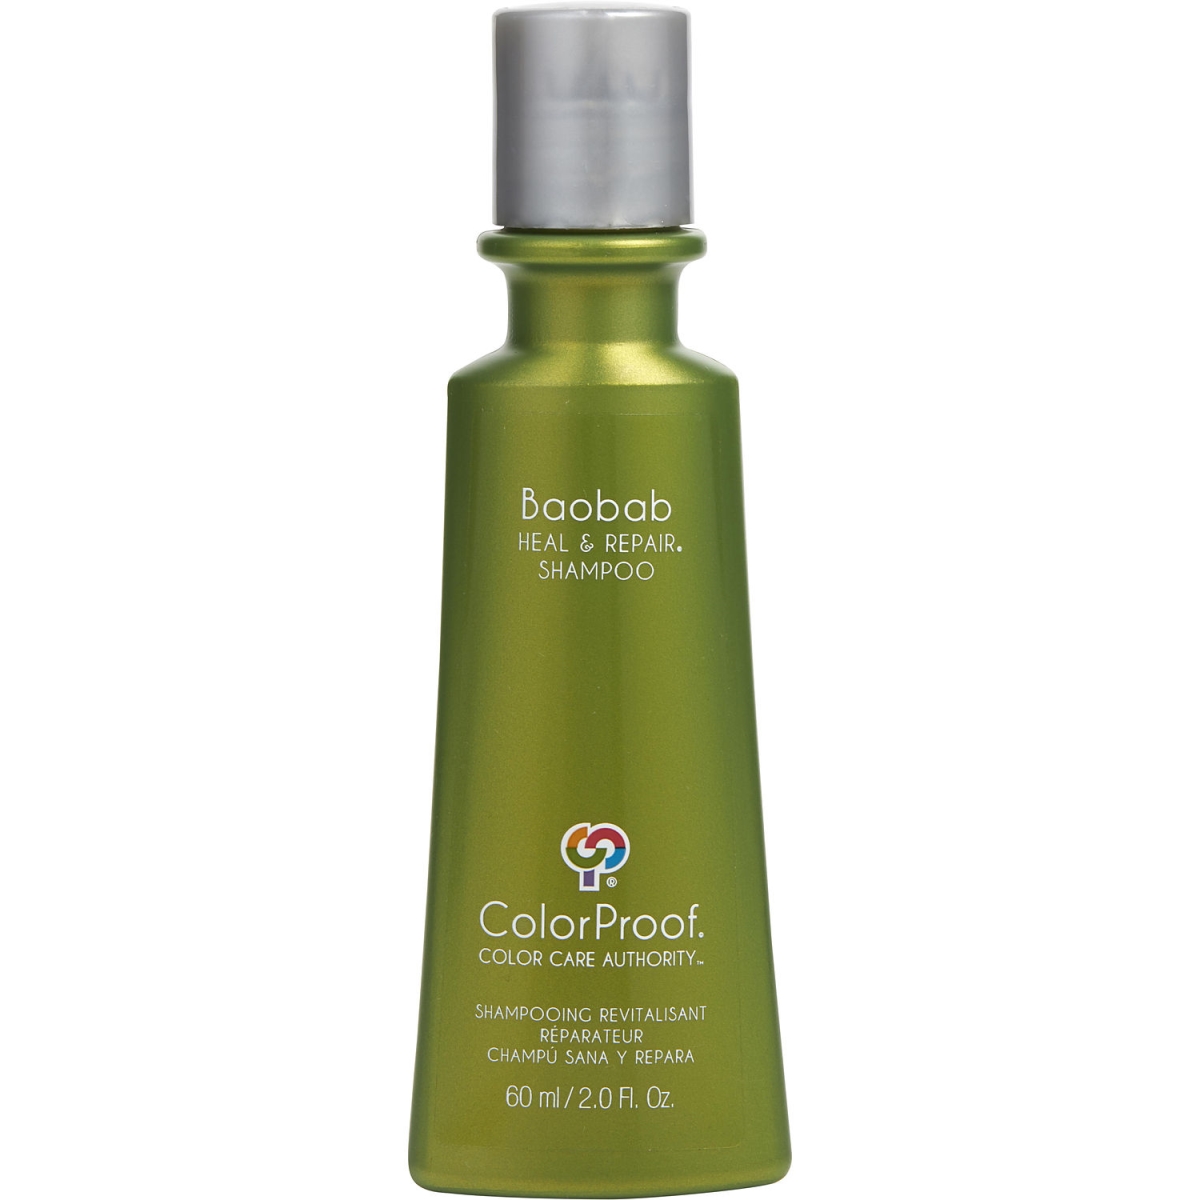 344011 2 Oz Unisex Baobab Heal & Repair Hair Shampoo